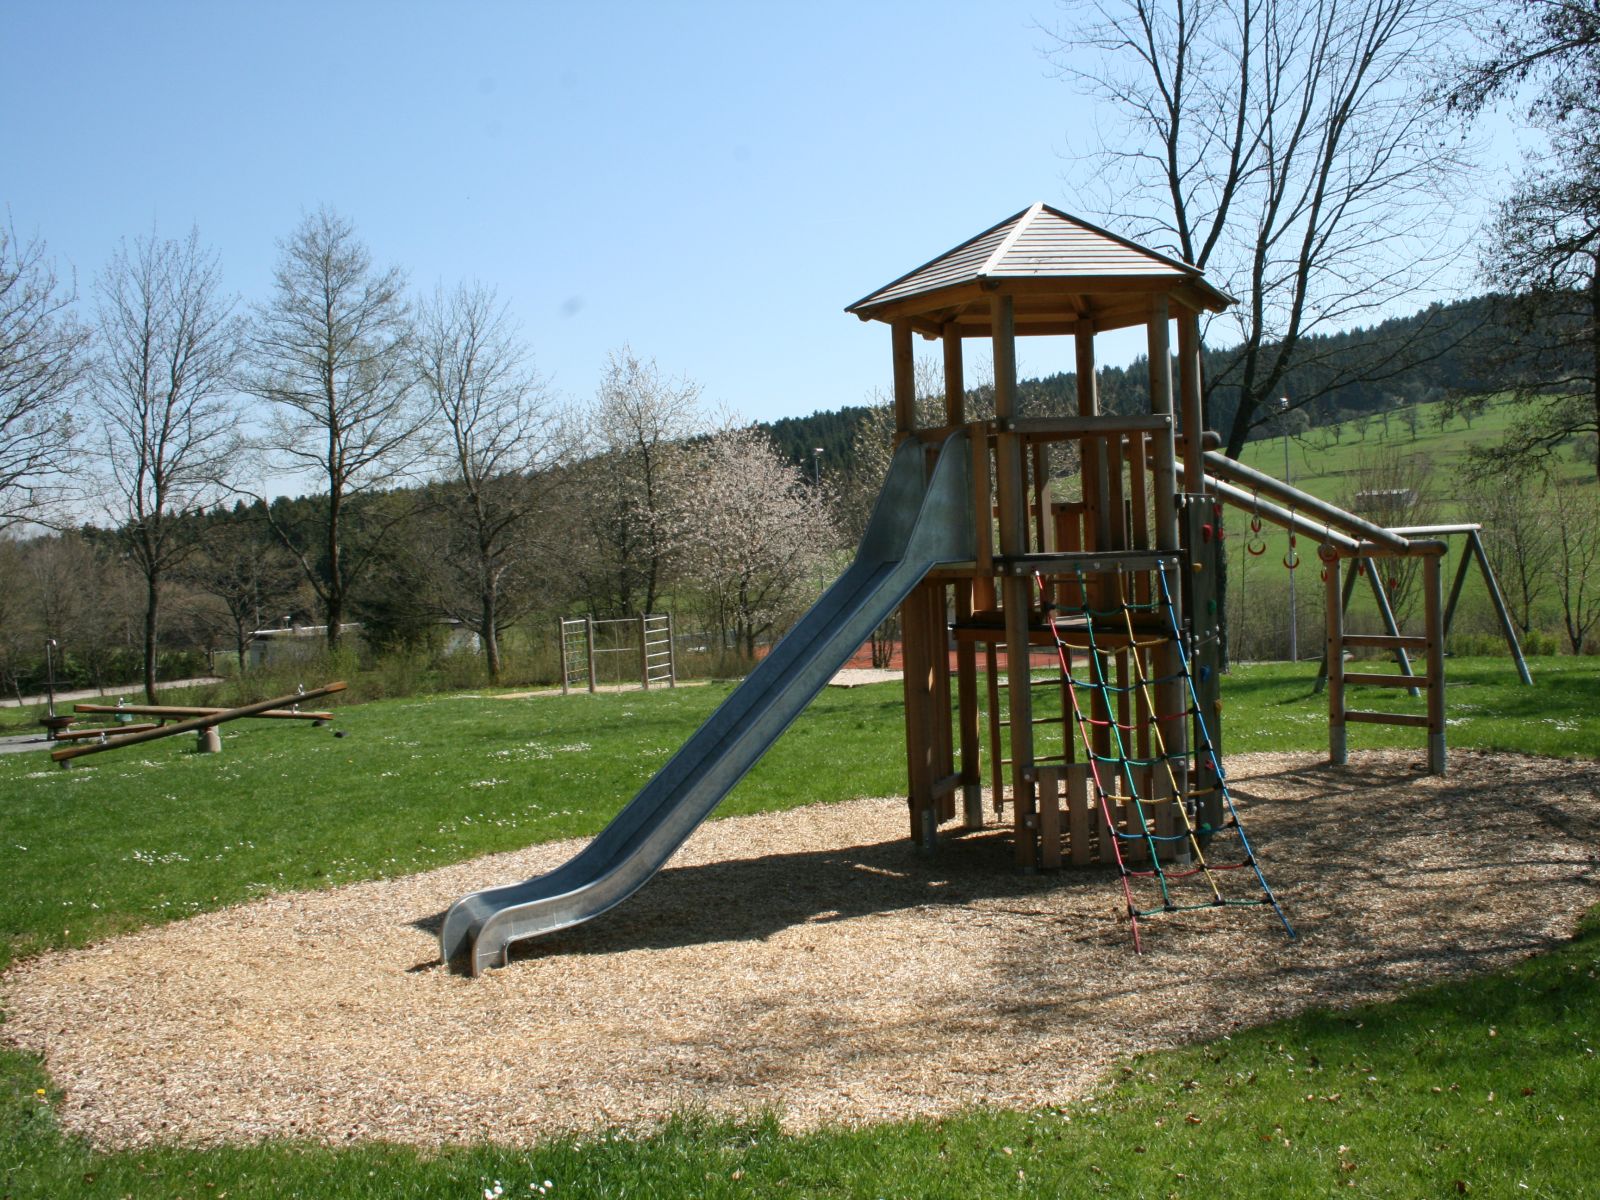  Spielplatz Pfaffenholz in Schopfloch - das Bild wird mit einem Klick vergrößert 